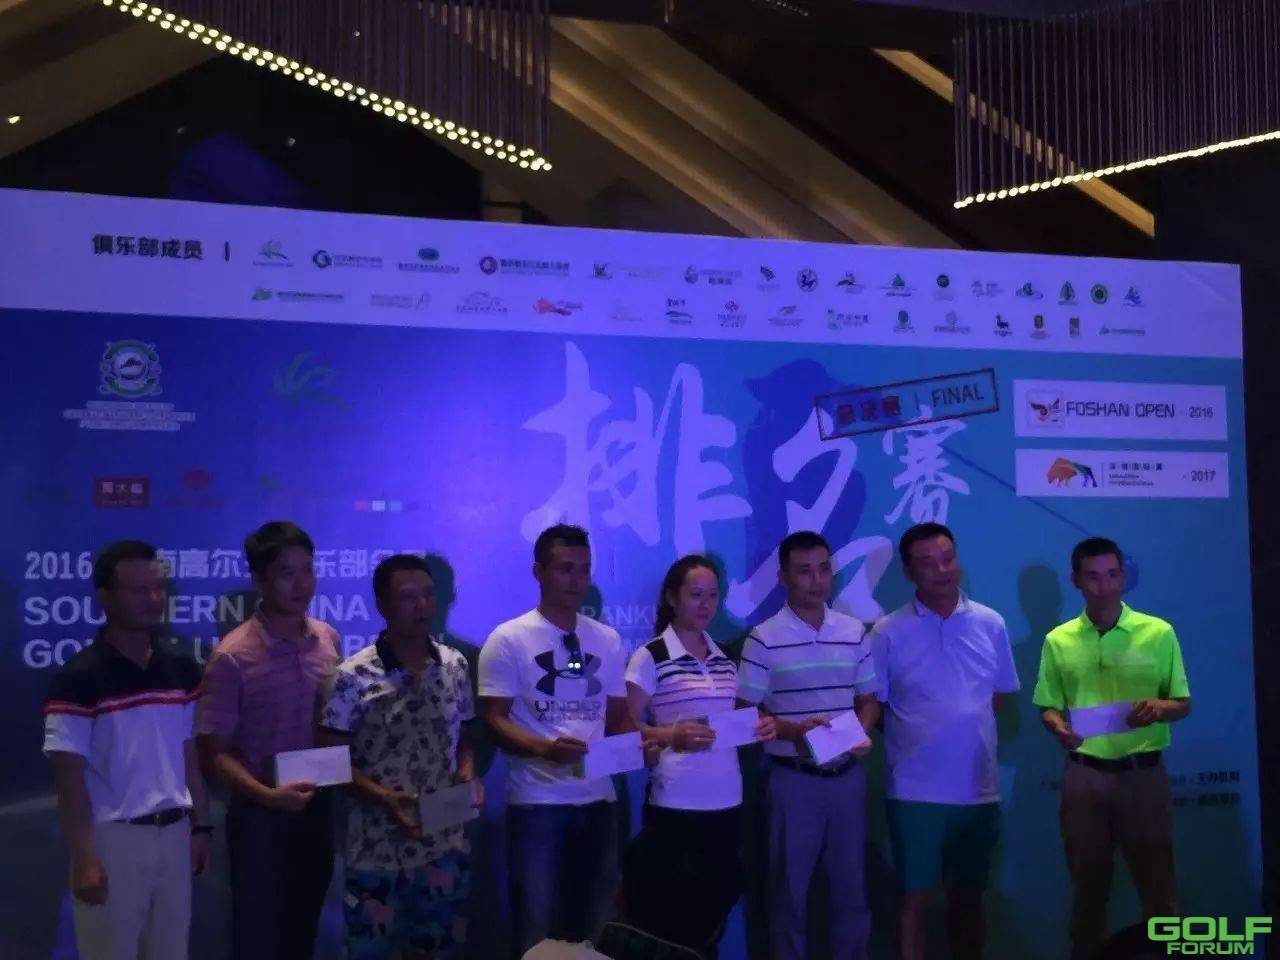 华南高尔夫俱乐部会员排名赛圆满落幕